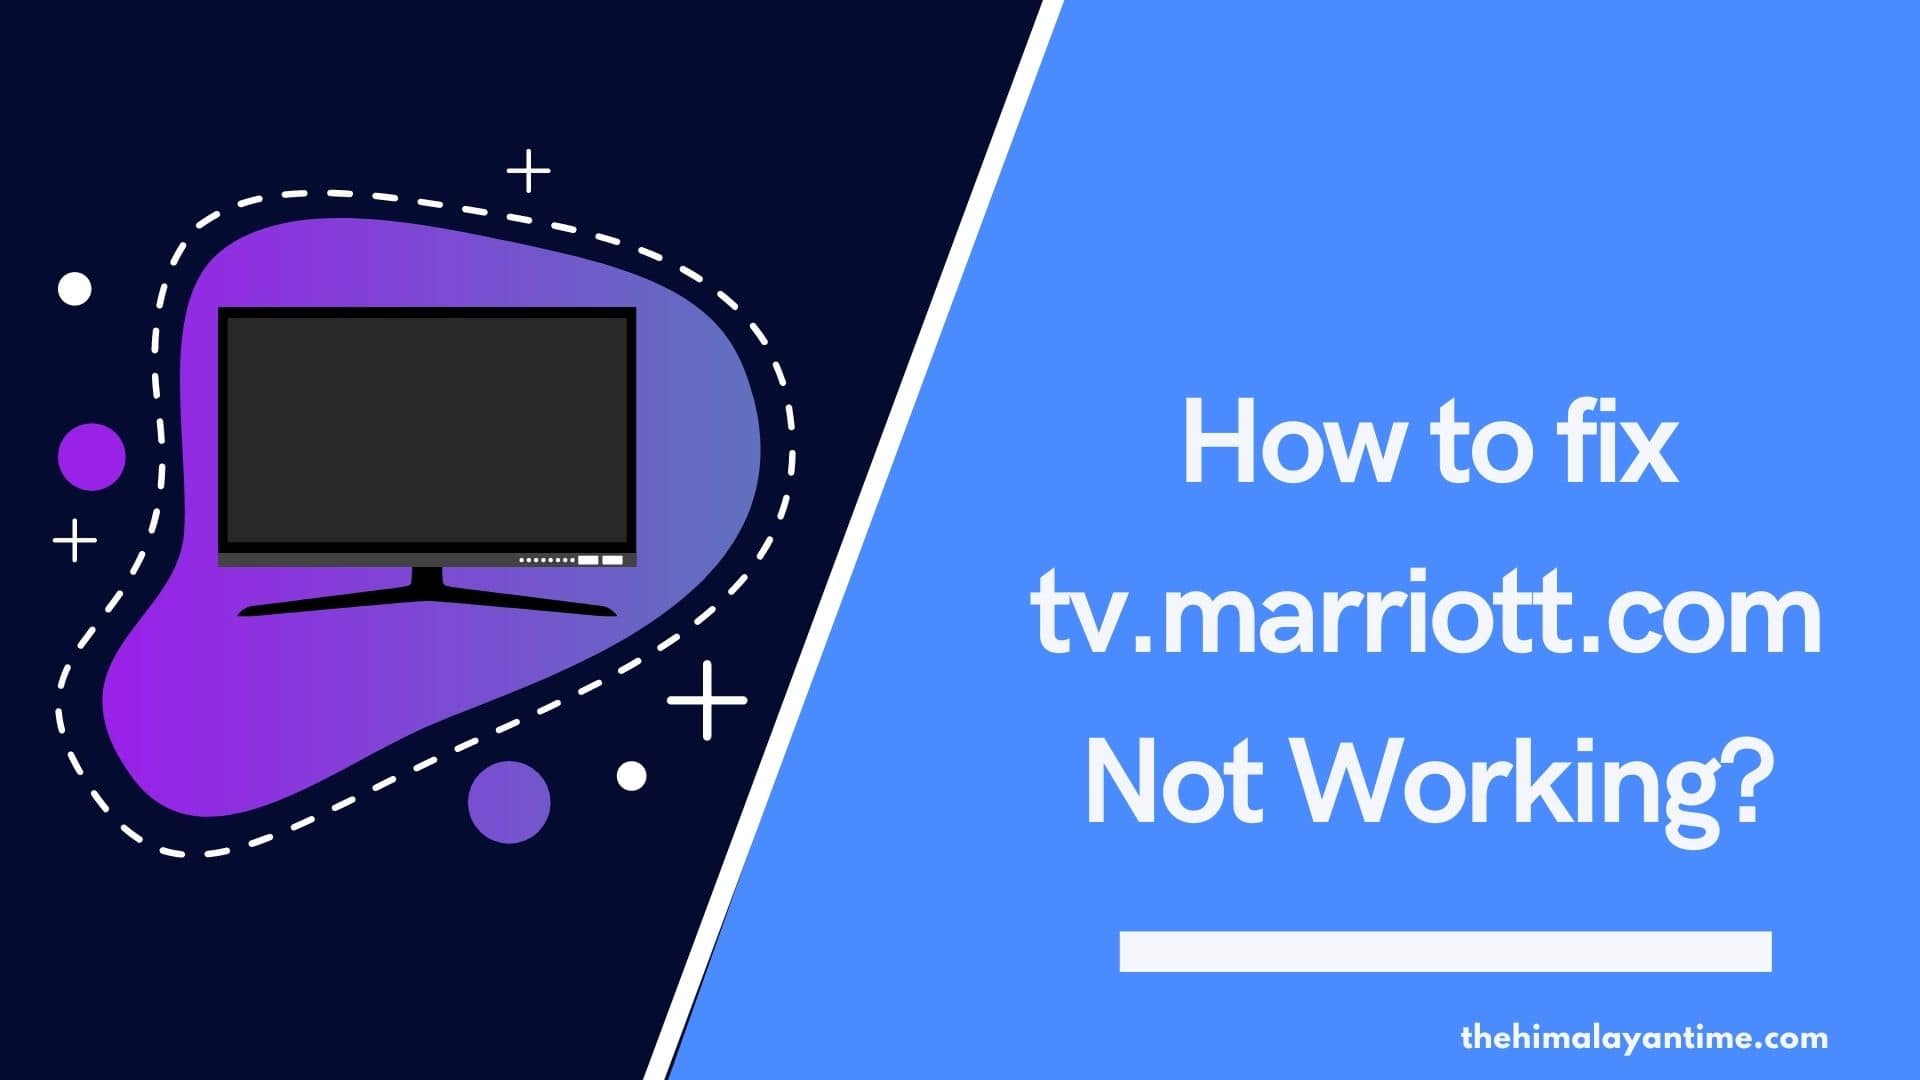 How to fix tv.marriott.com Not Working?